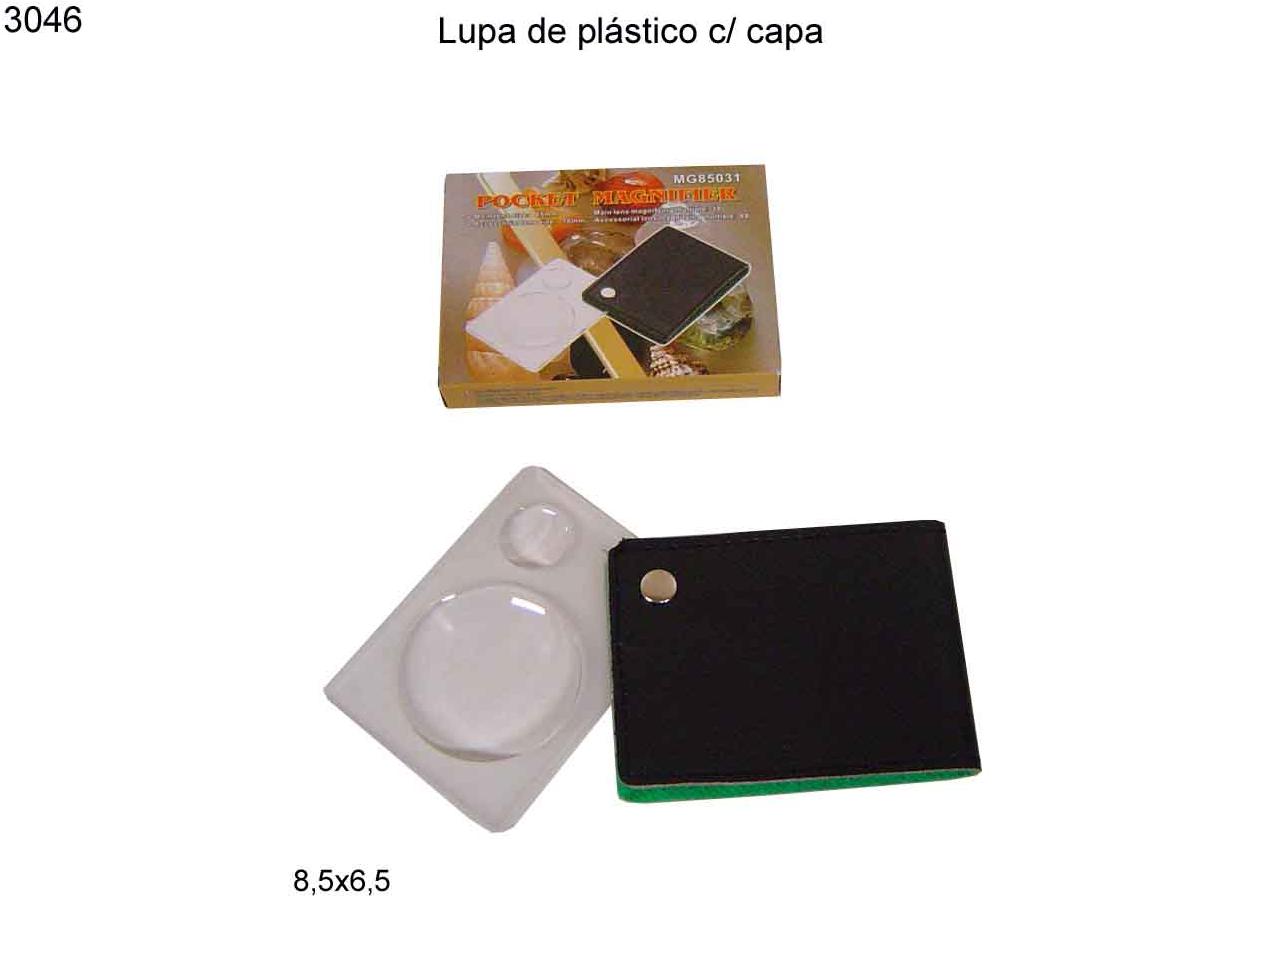 Lupa de plastico c/ capa (3046)